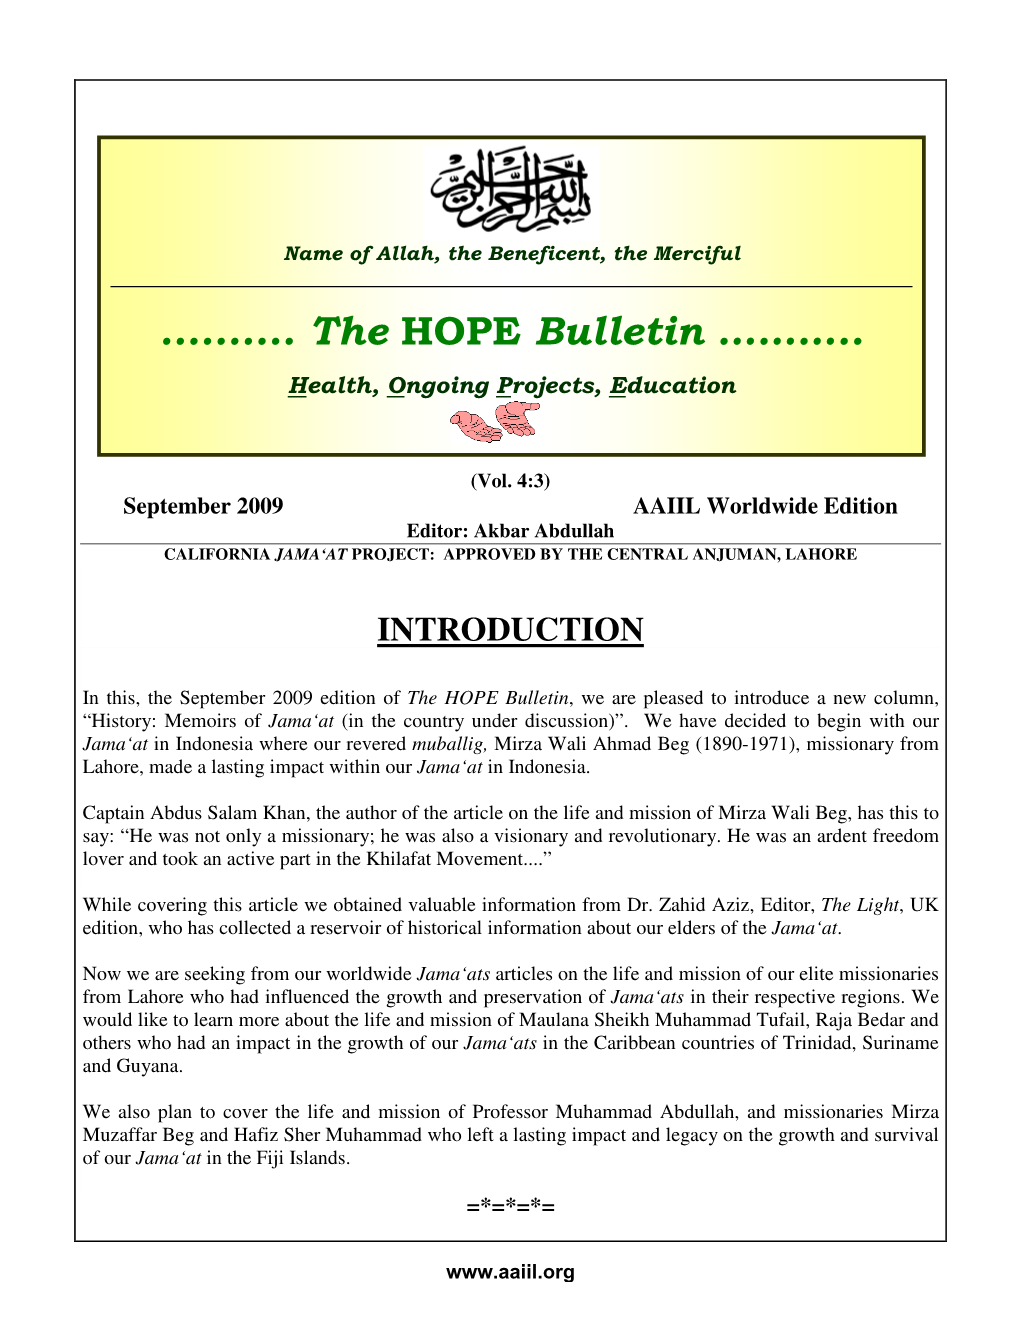 The HOPE Bulletin: September 2009 Bulletin —